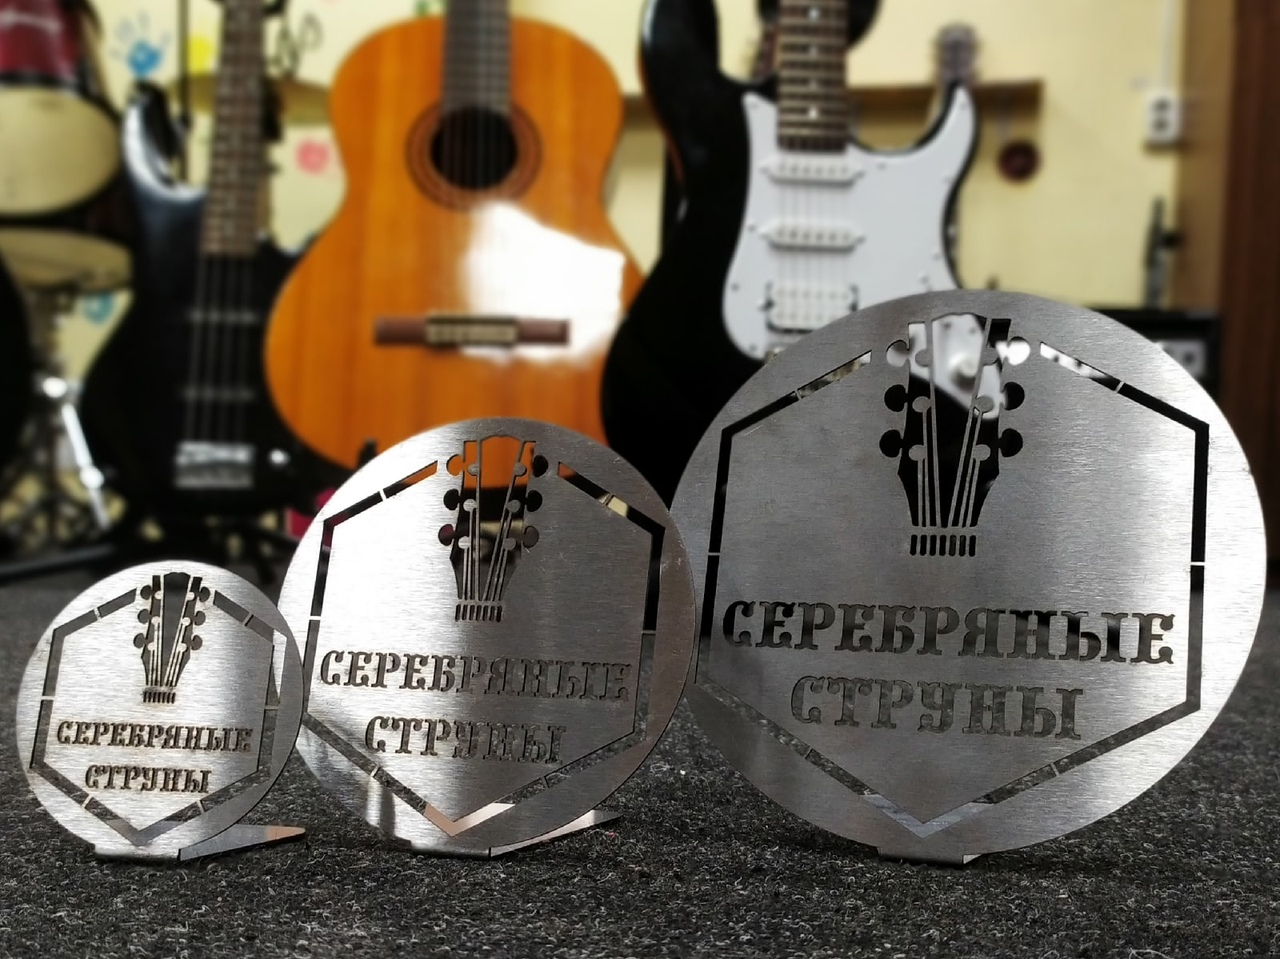 Организаторы музыкального конкурса в Кирове выиграли грант и вышли на всероссийский уровень